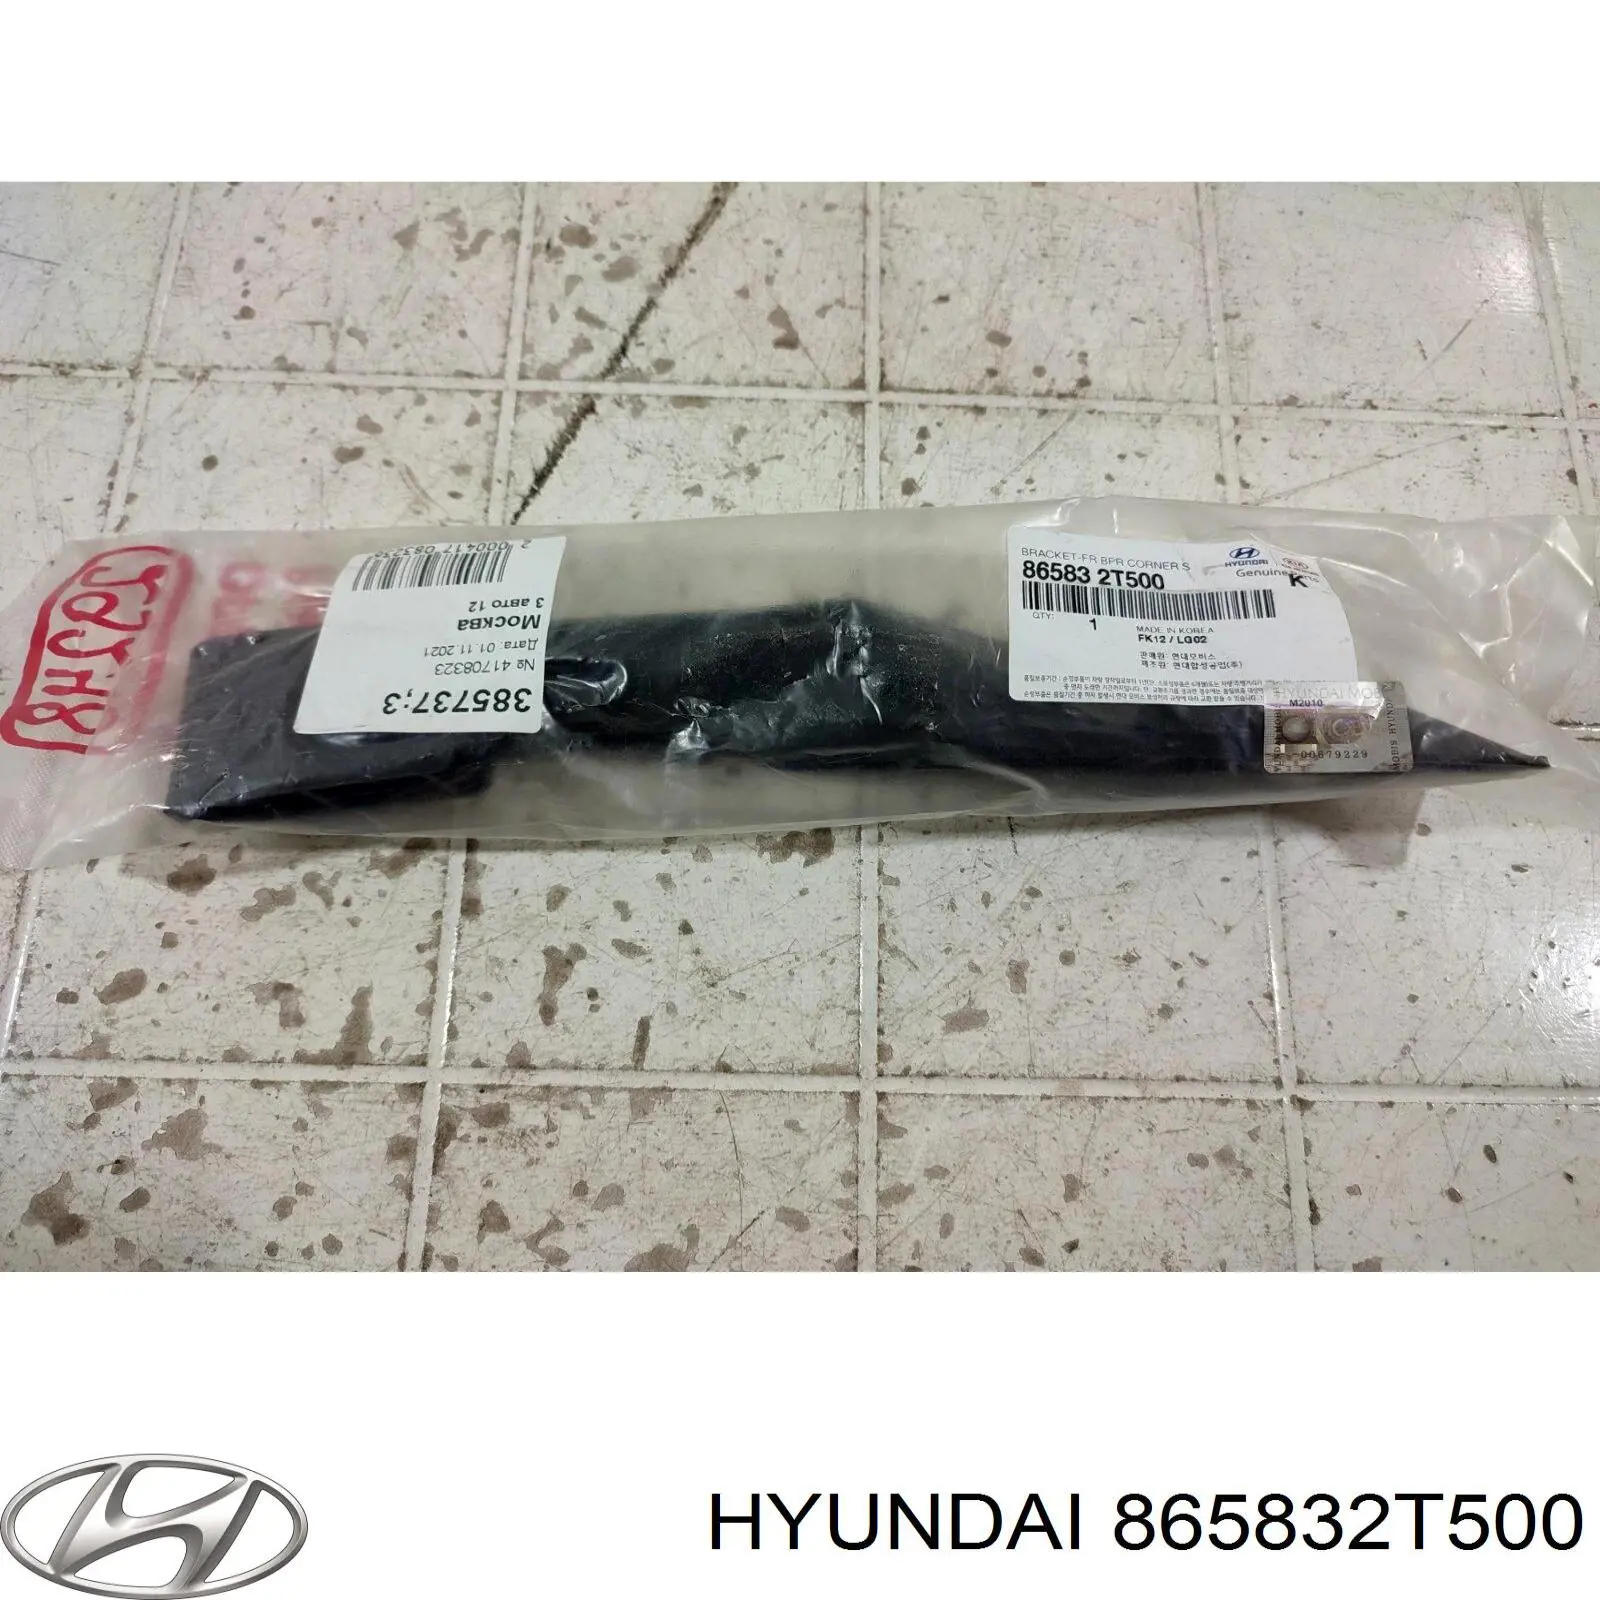 865832T500 Hyundai/Kia consola do pára-choque dianteiro esquerdo